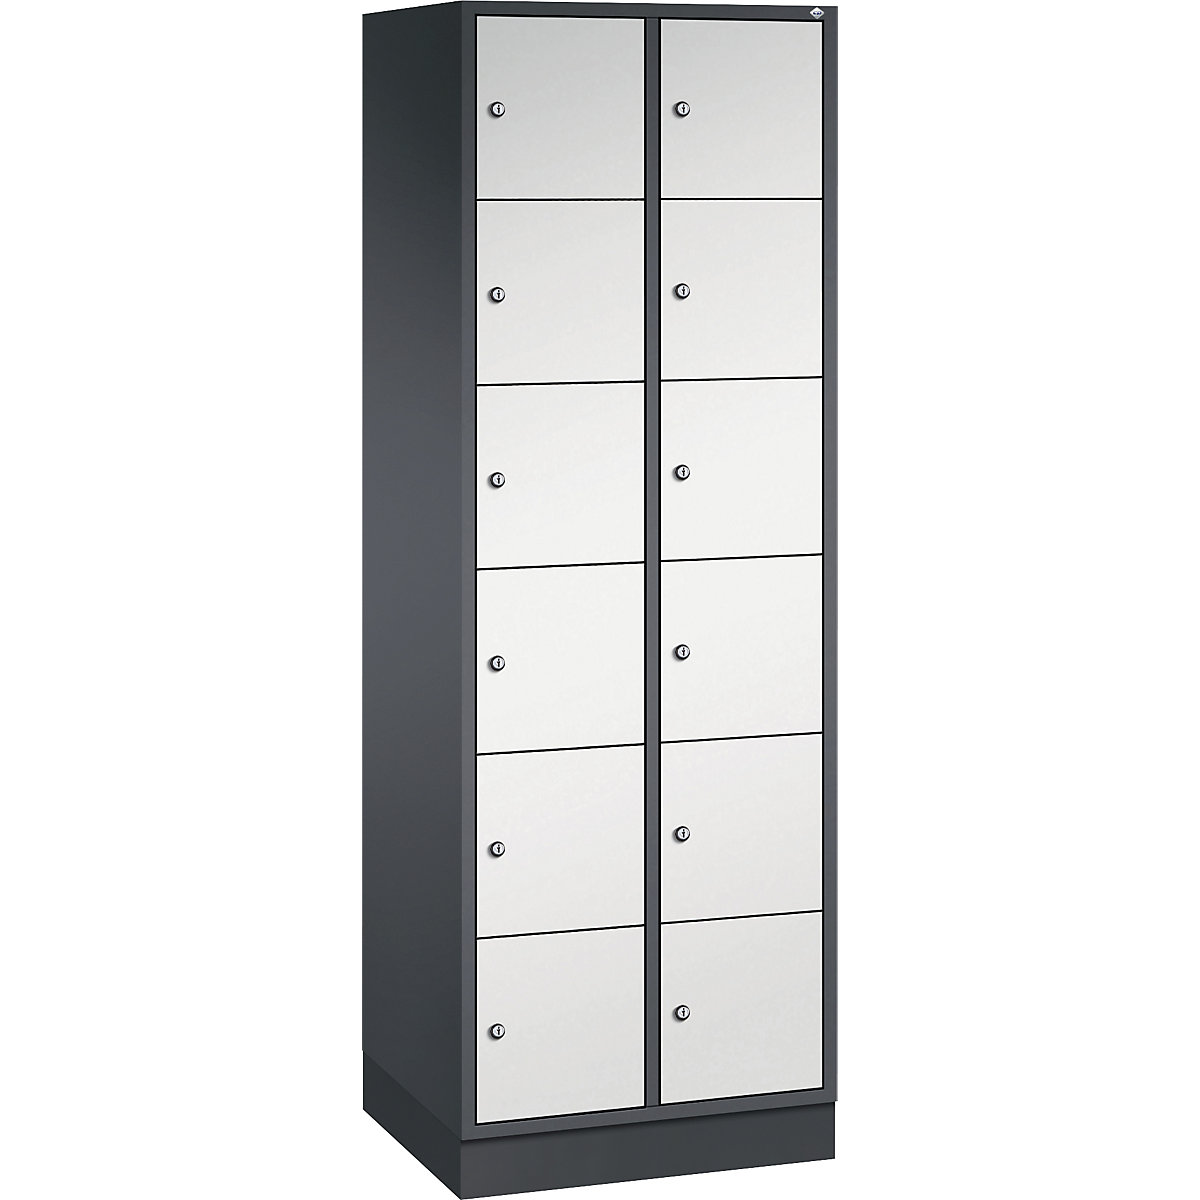 Vestiaire multicases en acier INTRO, casiers hauteur 285 mm – C+P, l x p 620 x 500 mm, 12 casiers, corps gris noir, portes gris clair-3